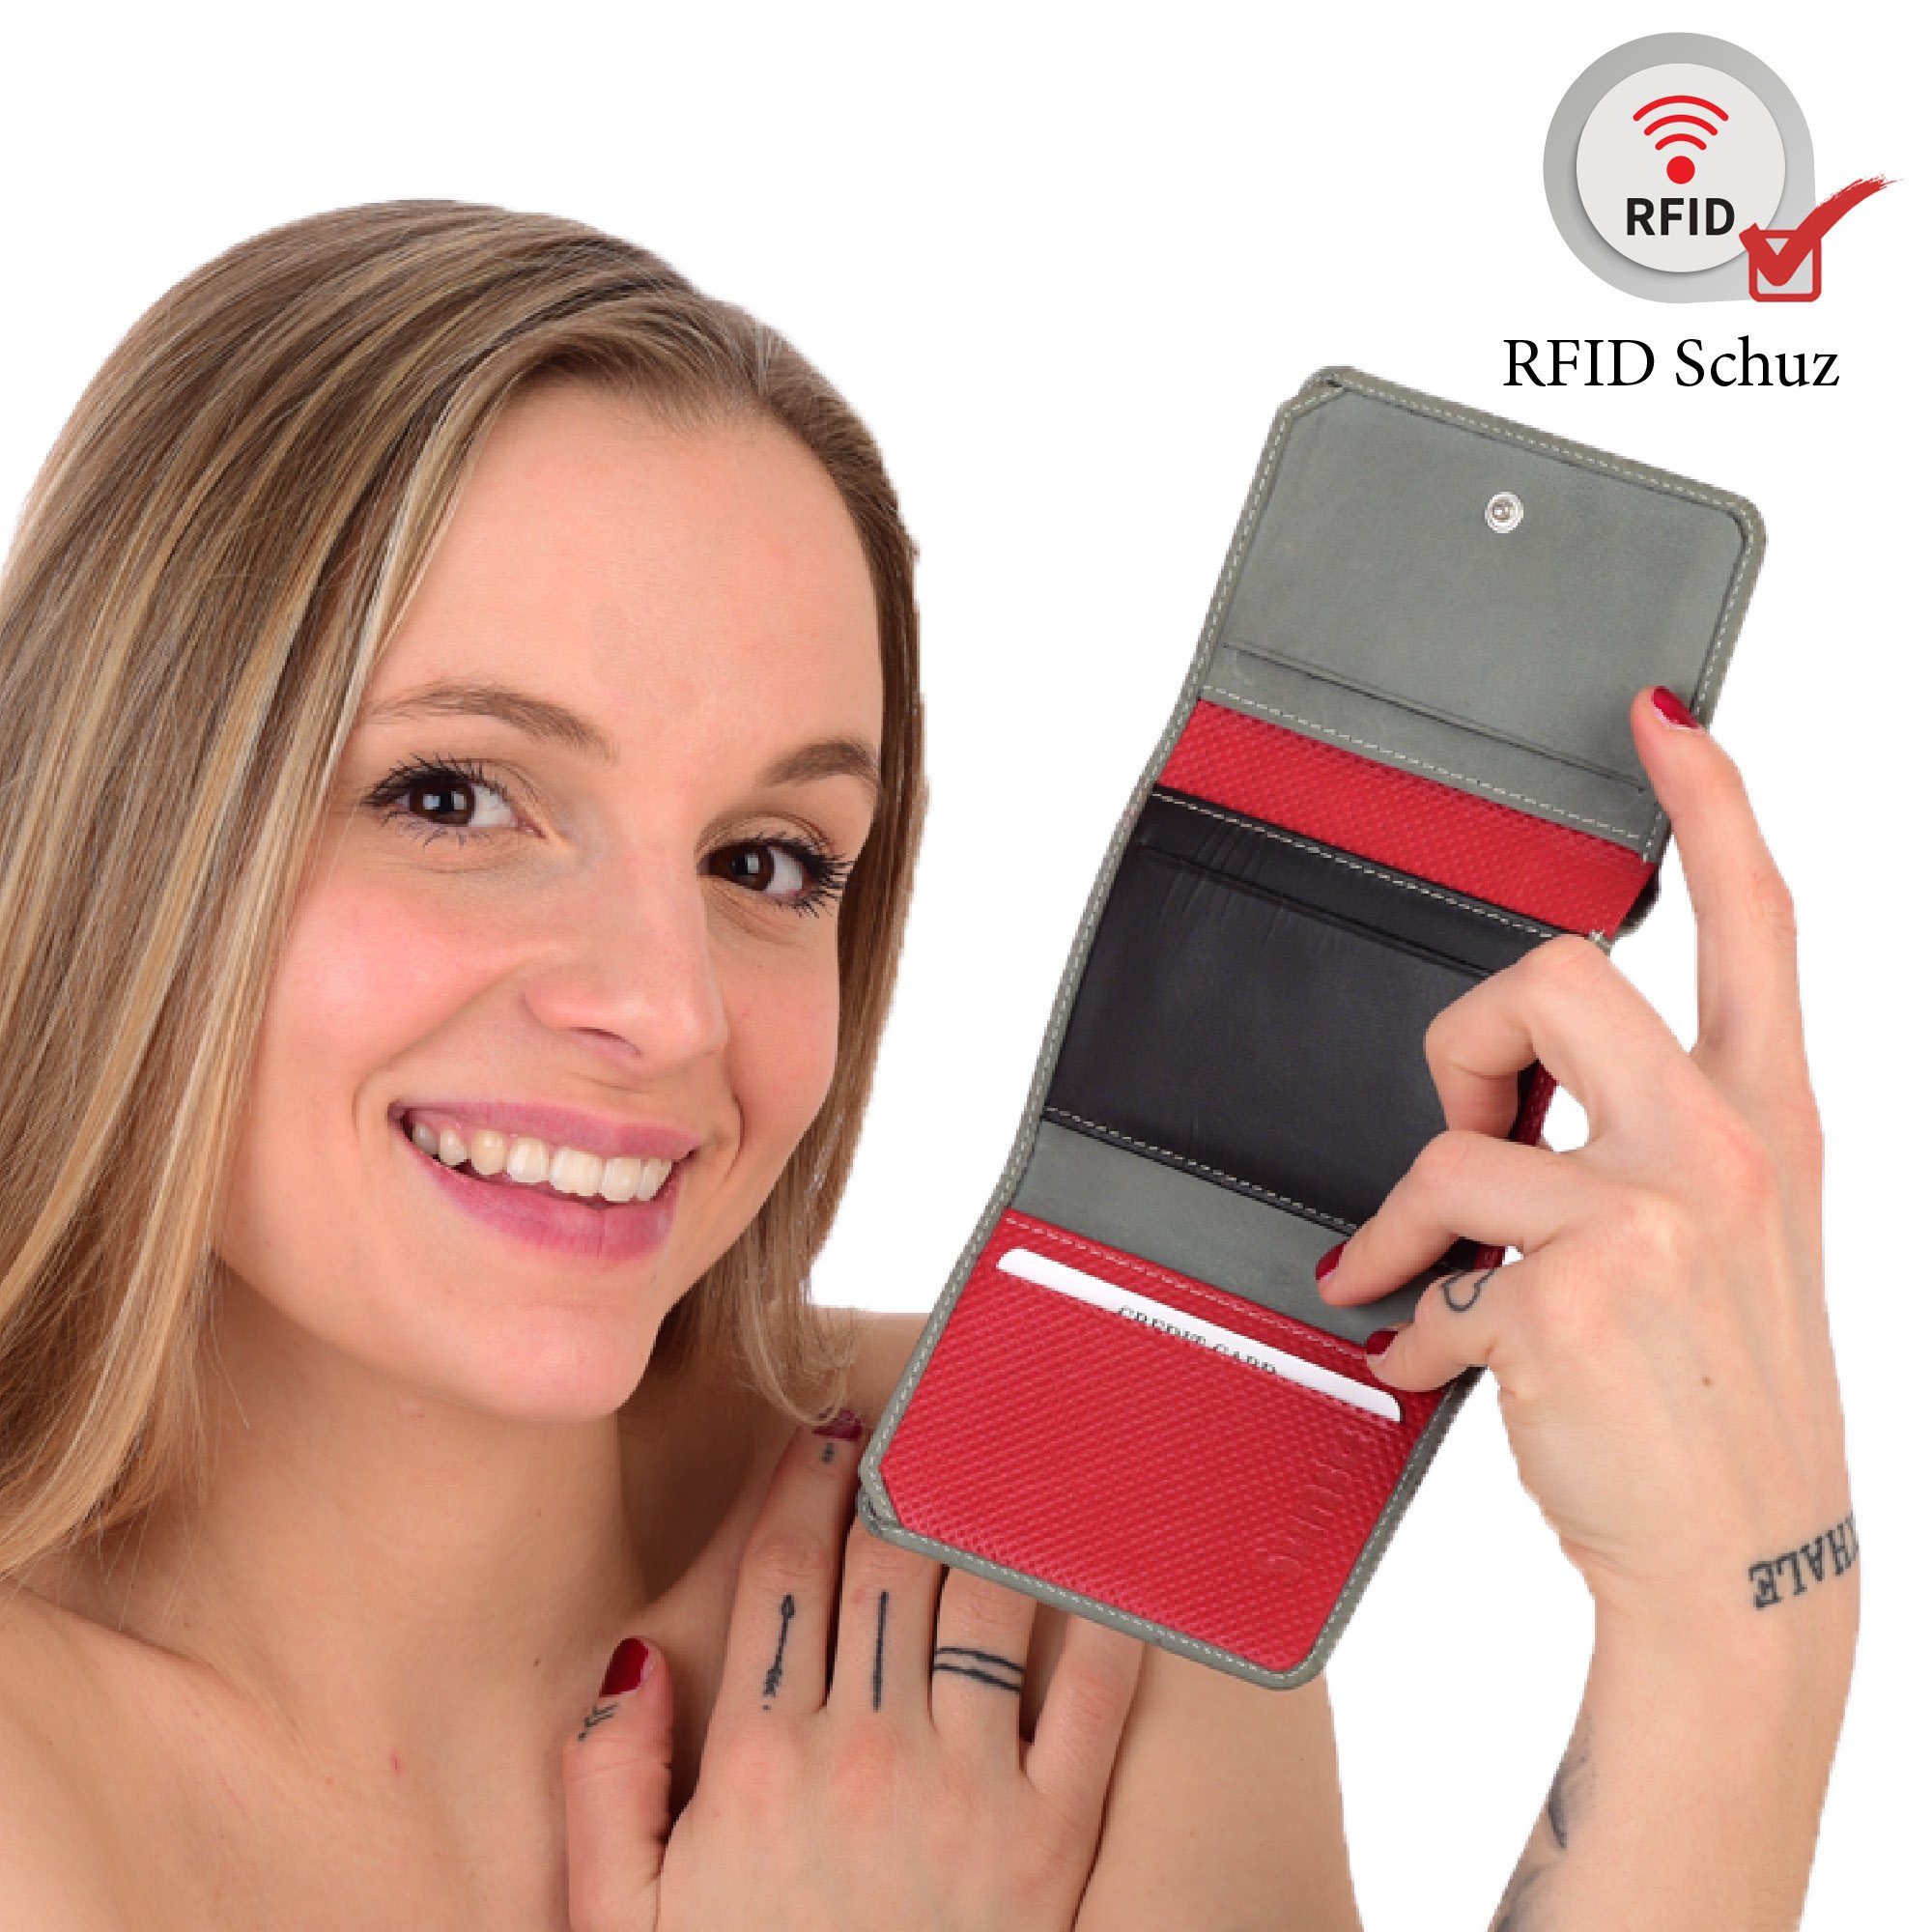 Leder Unisex Sunsa Leder, Brieftasche Portemonnaie echt grau/schwarz/rot Geldbörse echt mit recycelten Damen, Geldbeutel RFID-Schutz, Lederresten, klein aus